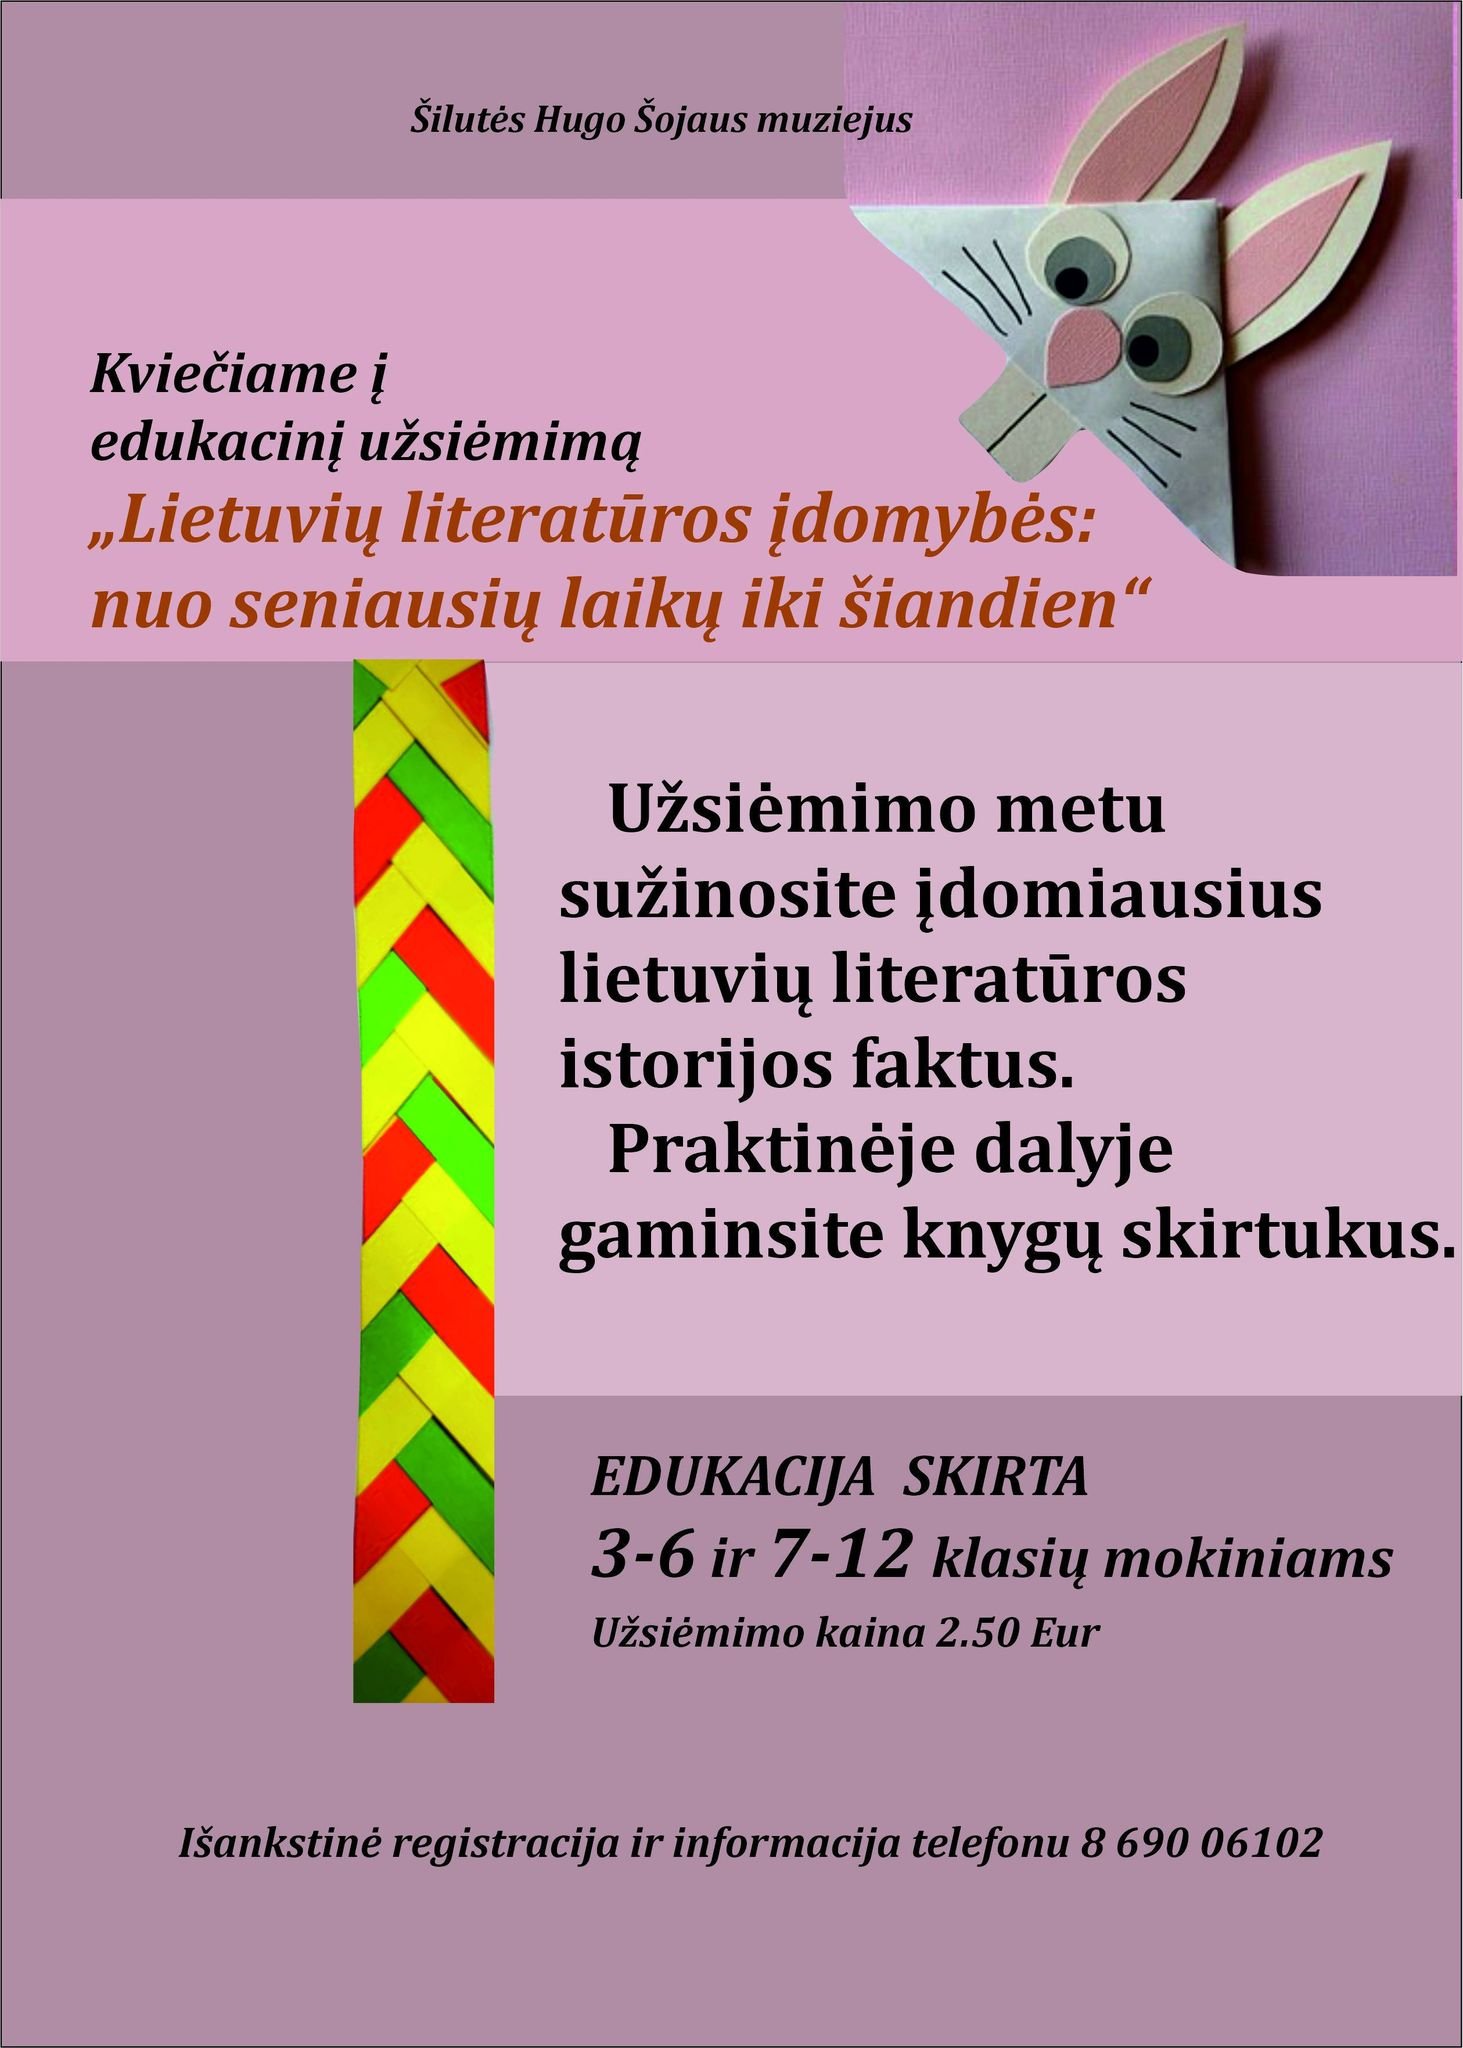 Kviečiame dalyvauti edukaciniame užsiėmime ,,Lietuvių literatūros įdomybės: nuo seniausių laikų iki šiandien!”